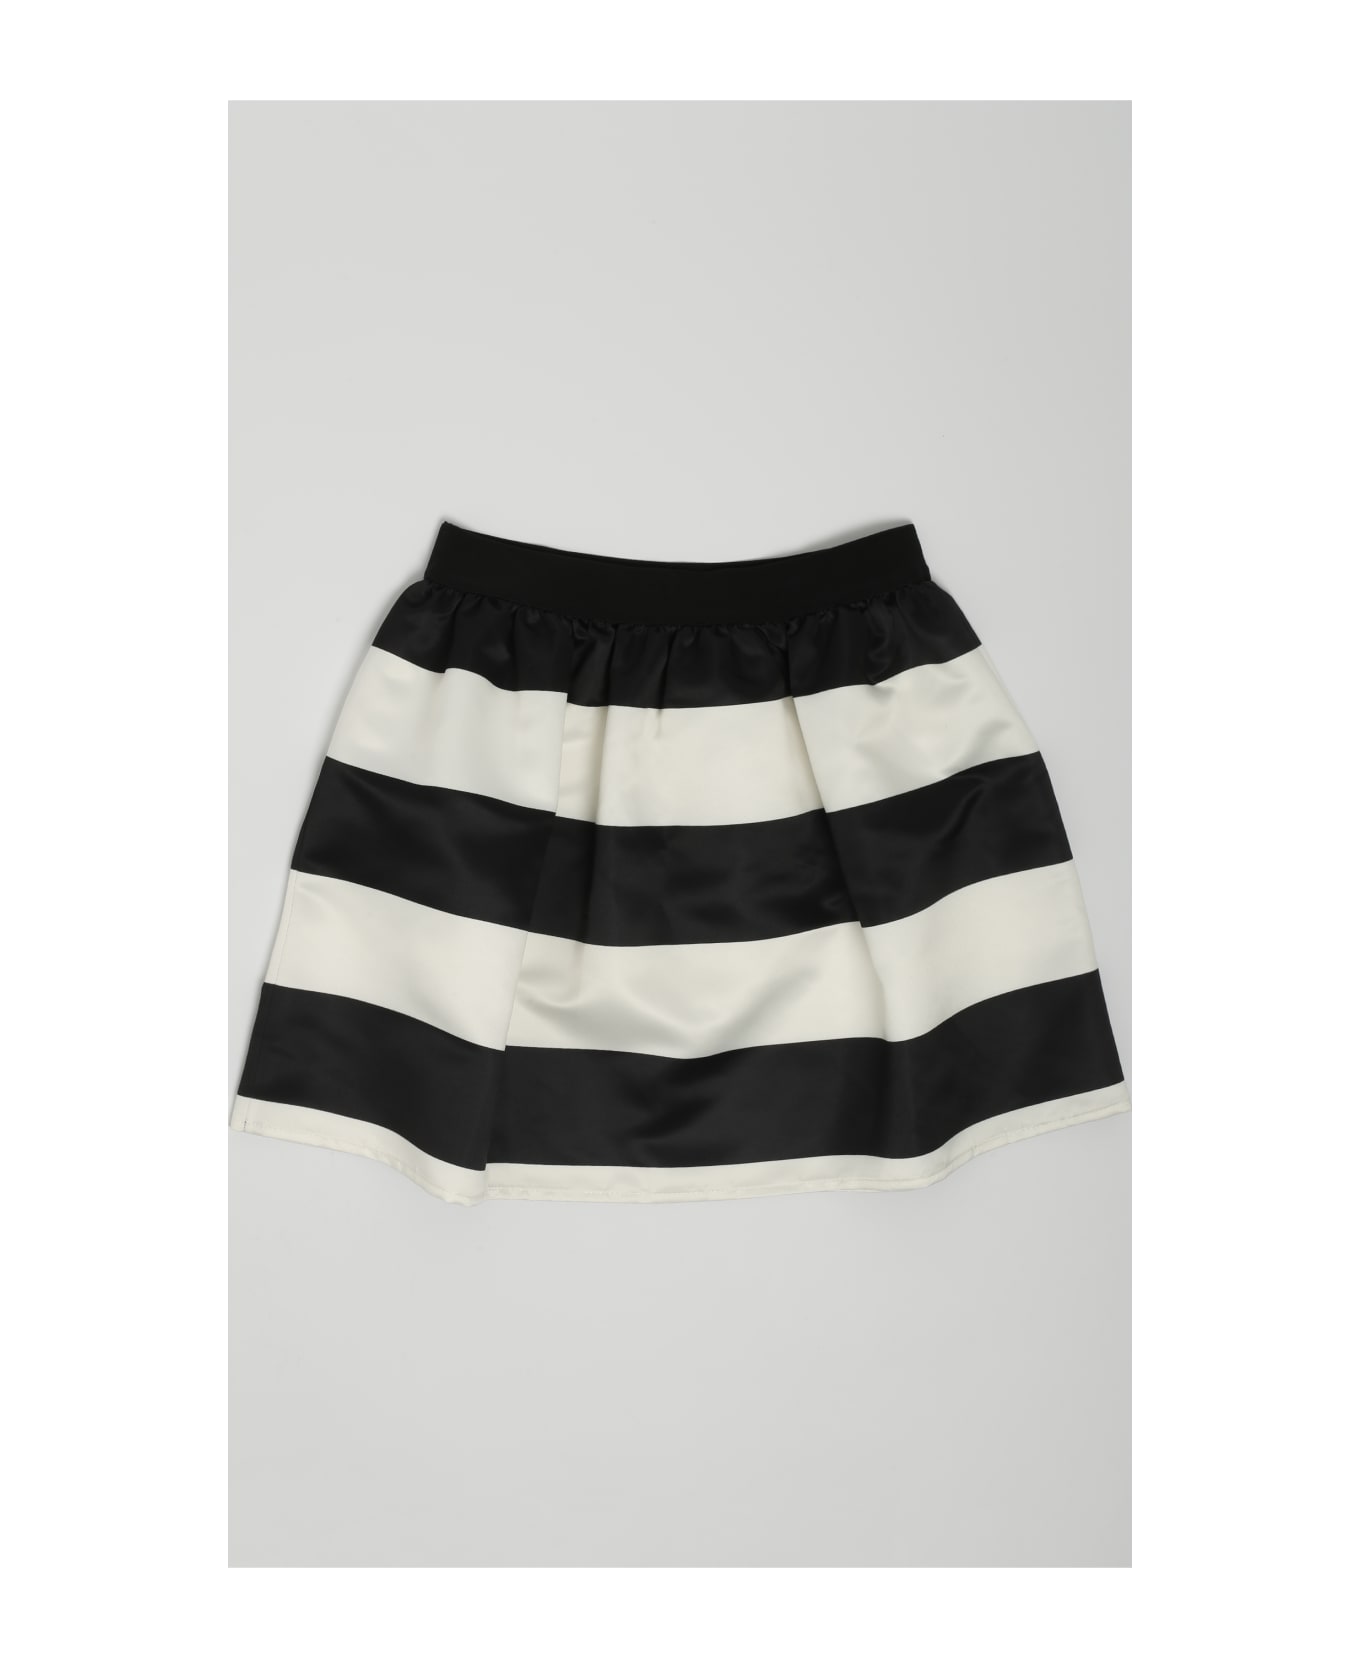 TwinSet Skirt Skirt - RIGATO BIANCO-NERO